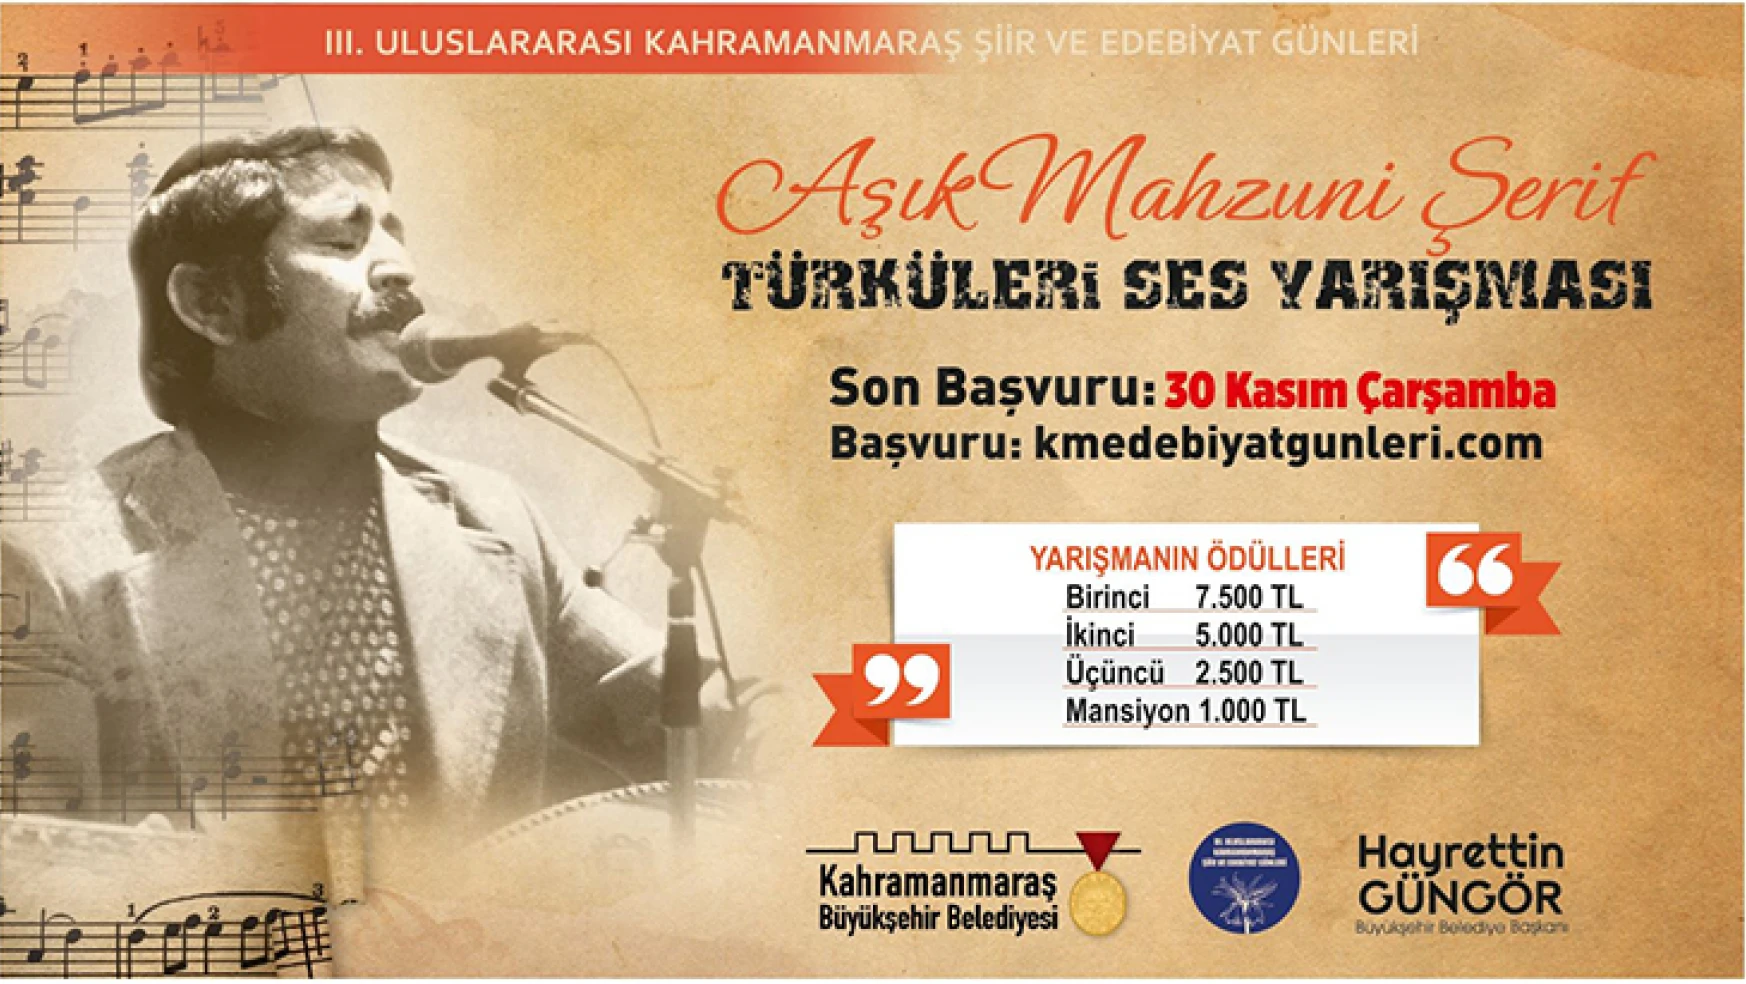 Âşık Mahzuni Şerif Türküleri Ses Yarışması'nda başvuru süresi uzatıldı